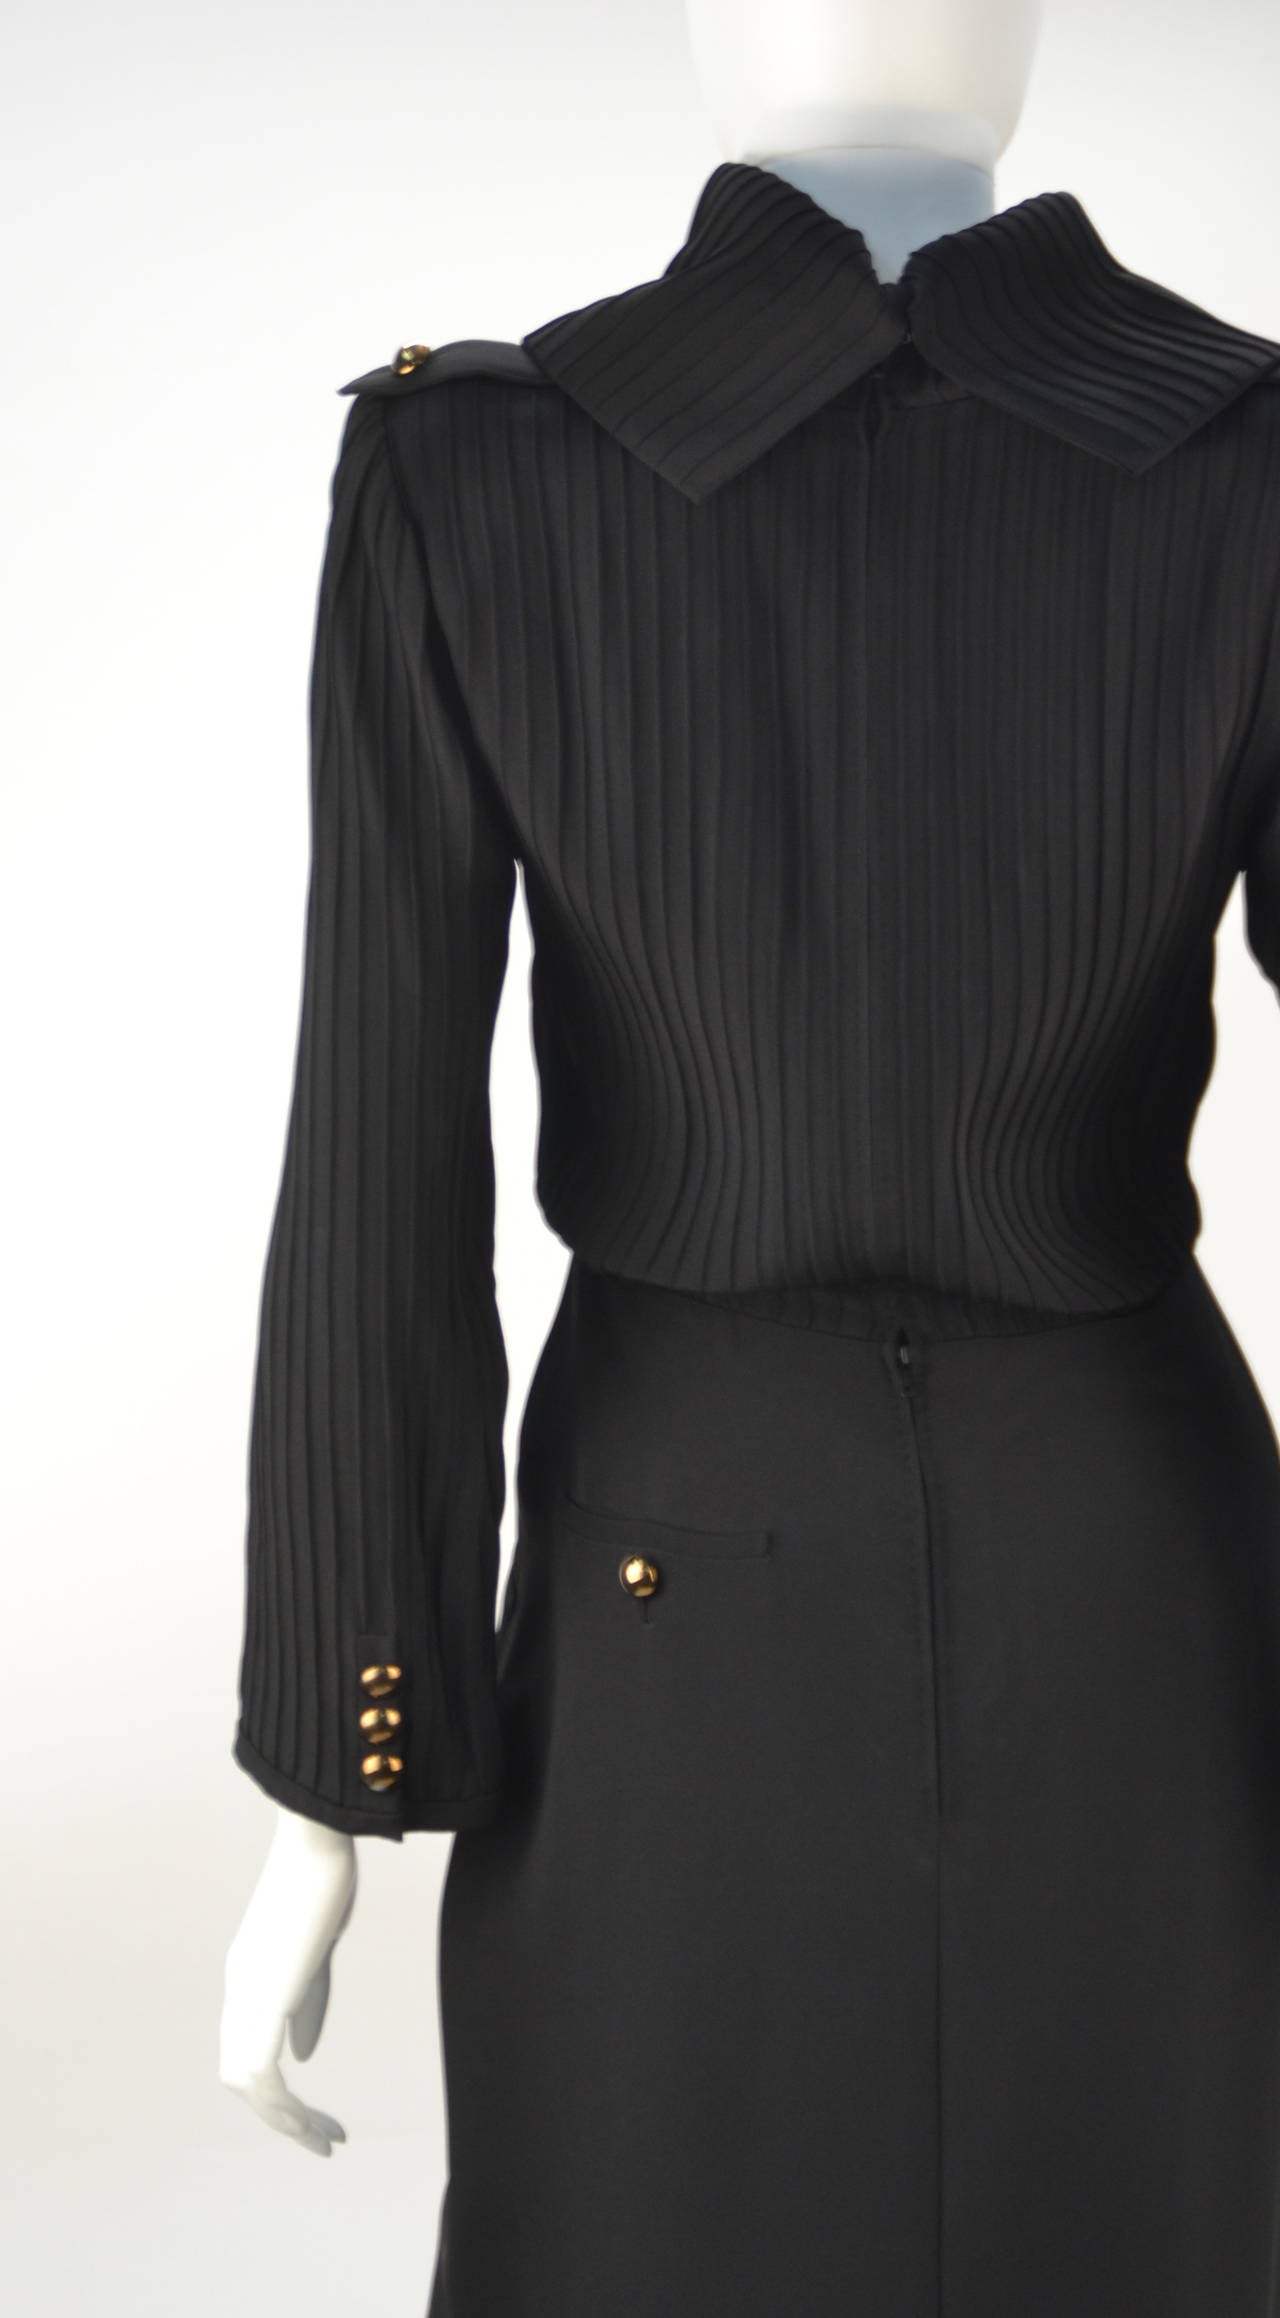 Women's 1960s Louis Feraud Black Dress